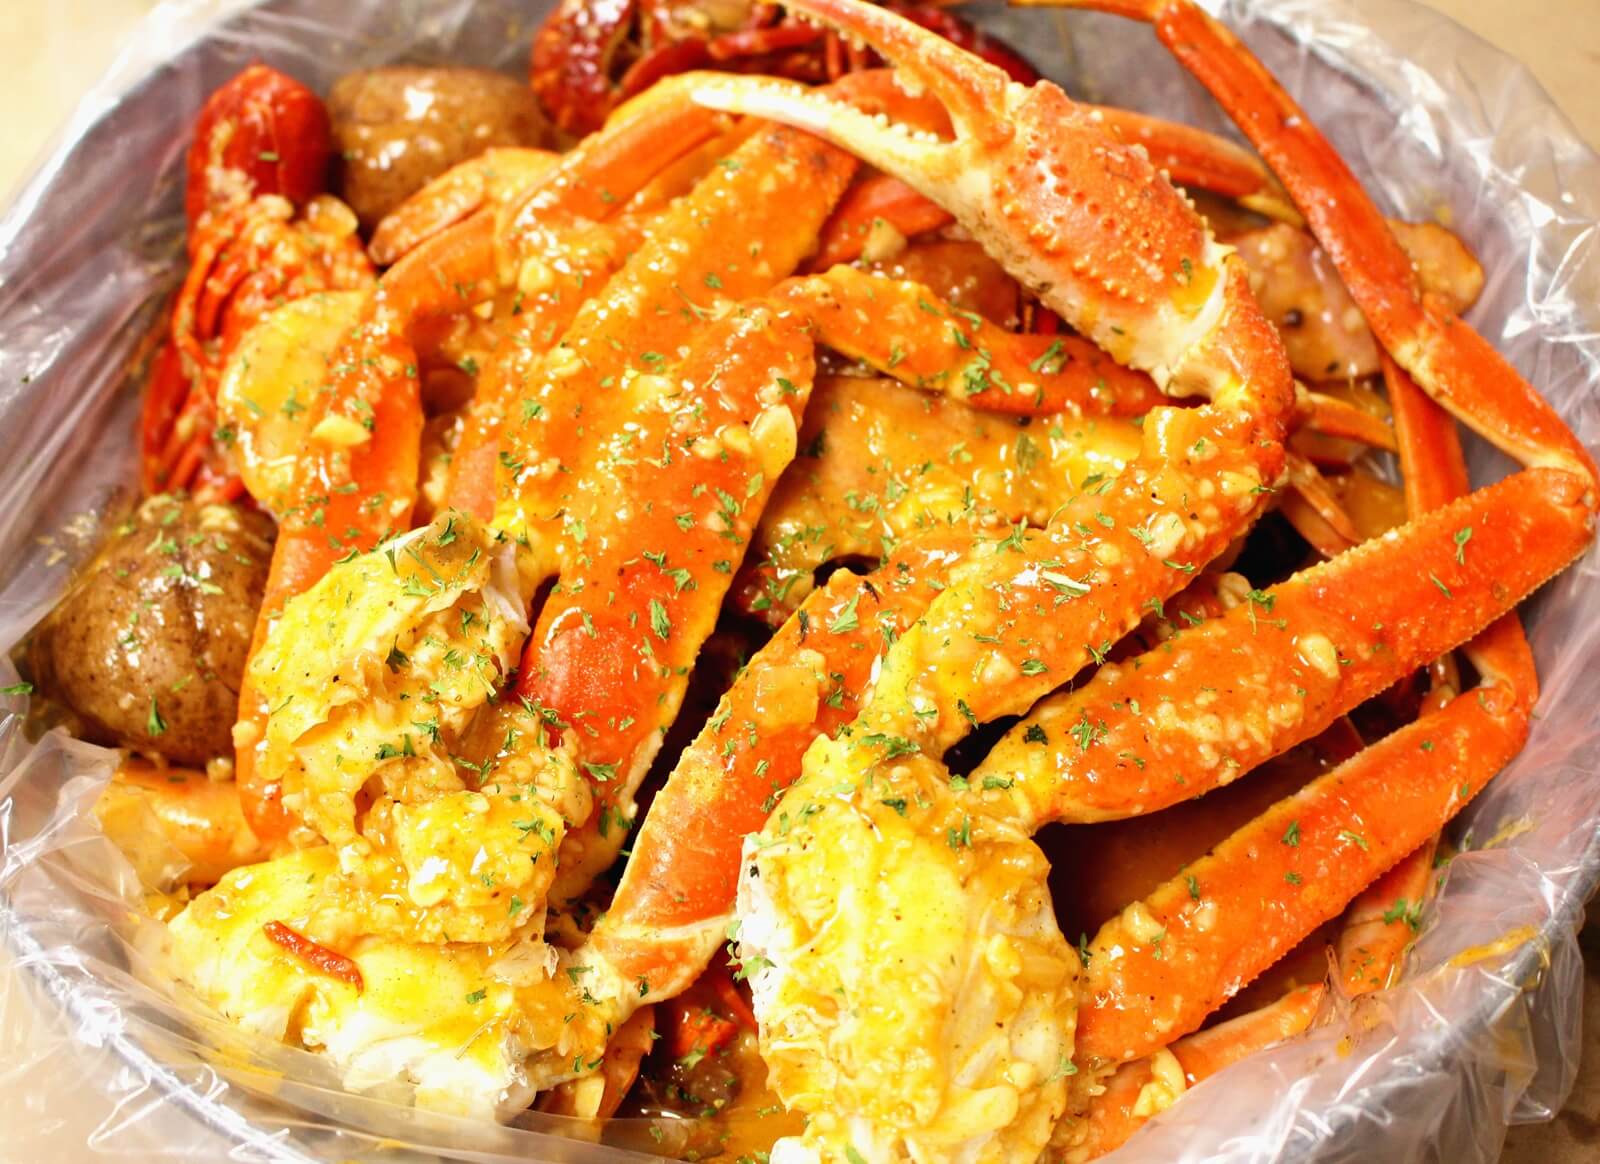 Seafood Combo 2 - 1LB Crawfish & 1LB Shrimp & 1LB Snow Crab